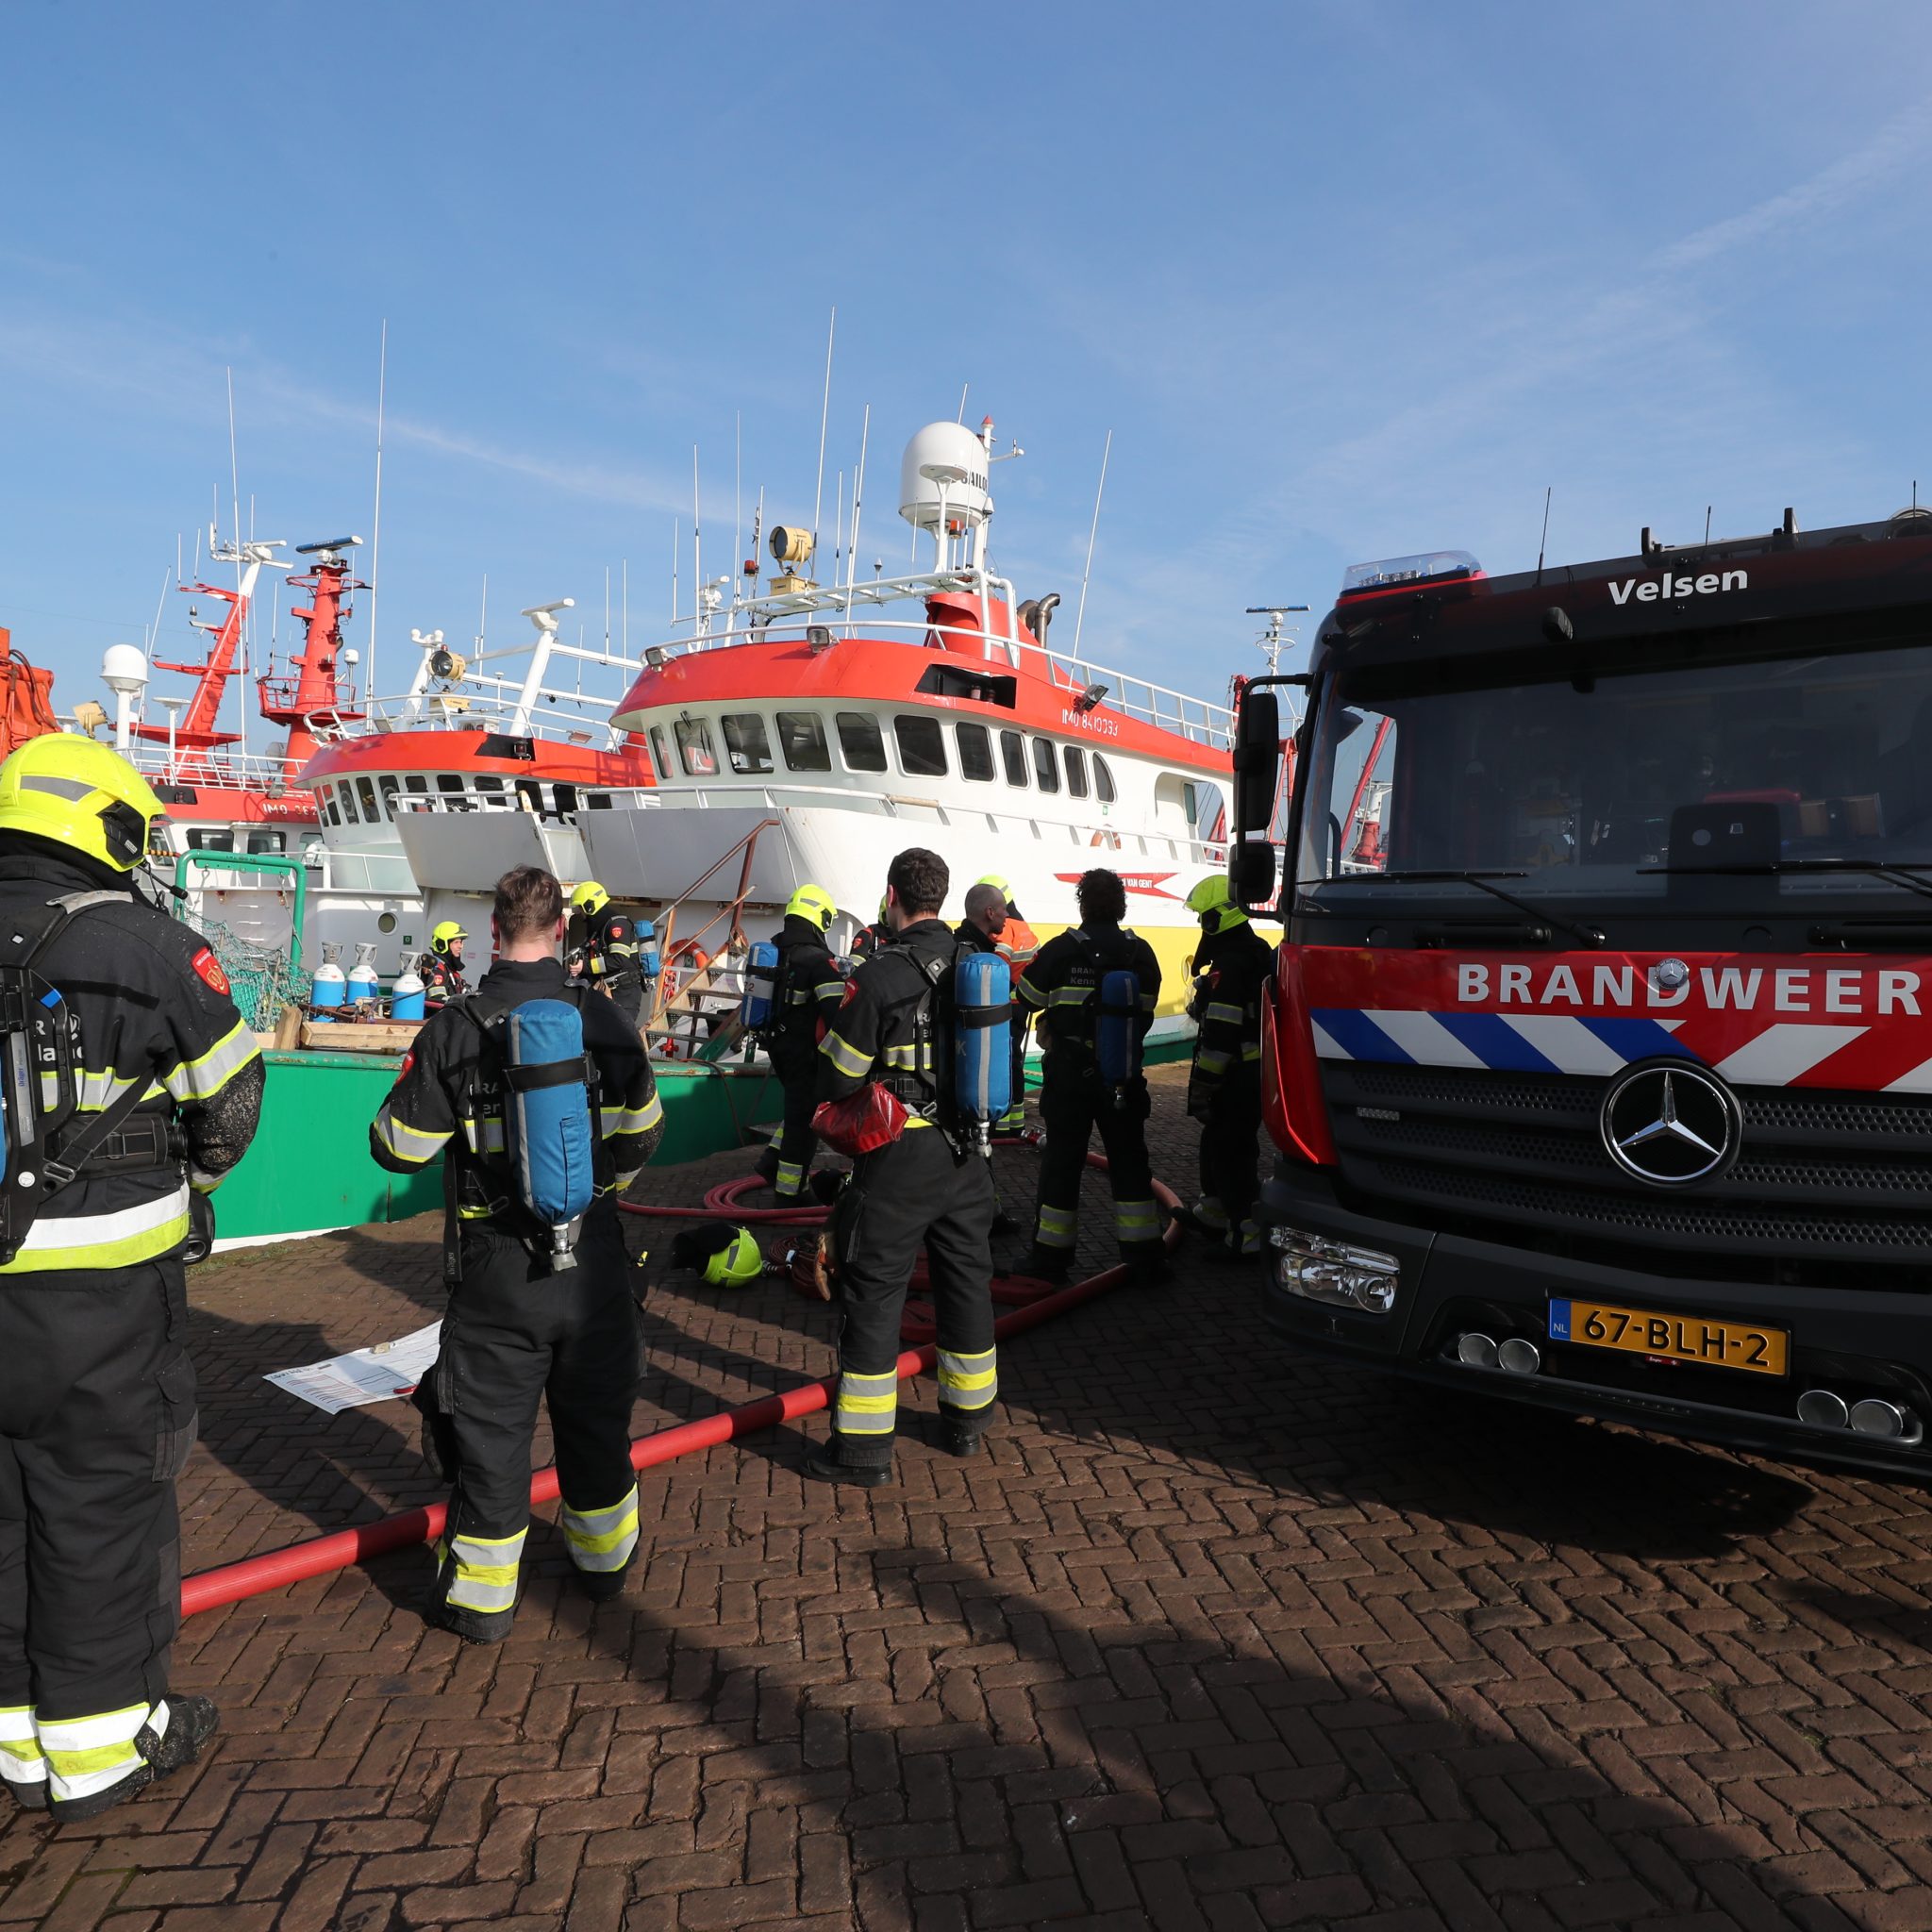 De brandweer rukte met vijf wagens uit voor de brand op de Fenny, die tussen andere schepen van Van Laar aan de Trawlerkade in IJmuiden lag. (Foto Bram Pronk)